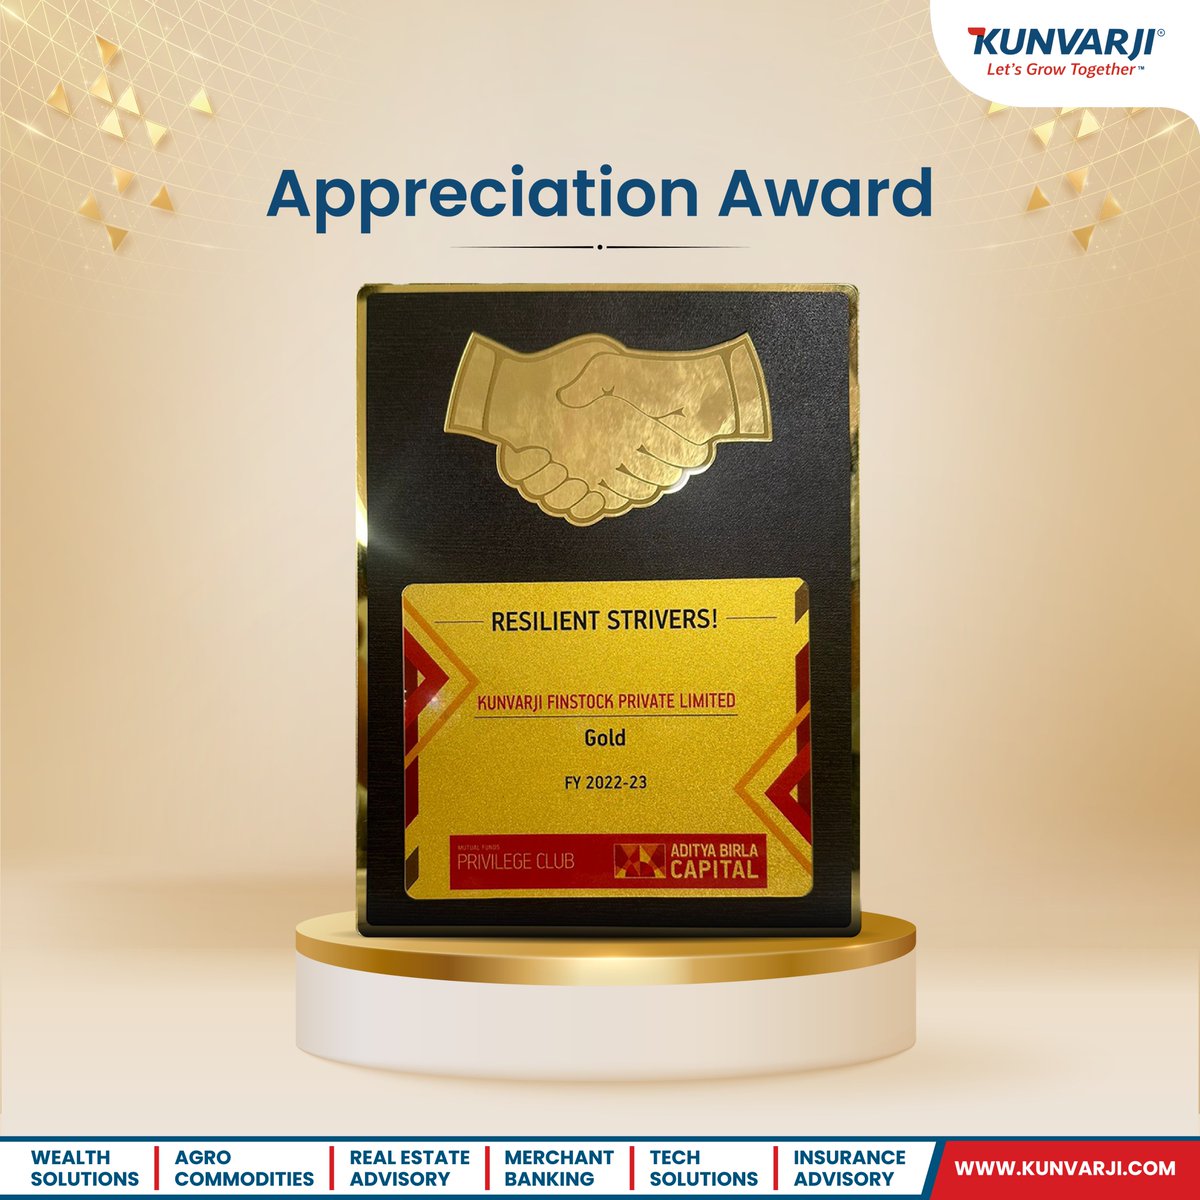 Kunvarji Finstock PVT LTD receives an Achievers Award from Aditya Birla Capital.

#Kunvarji #AppreciationAwards #awards #achievement #AdityaBirlaCapital